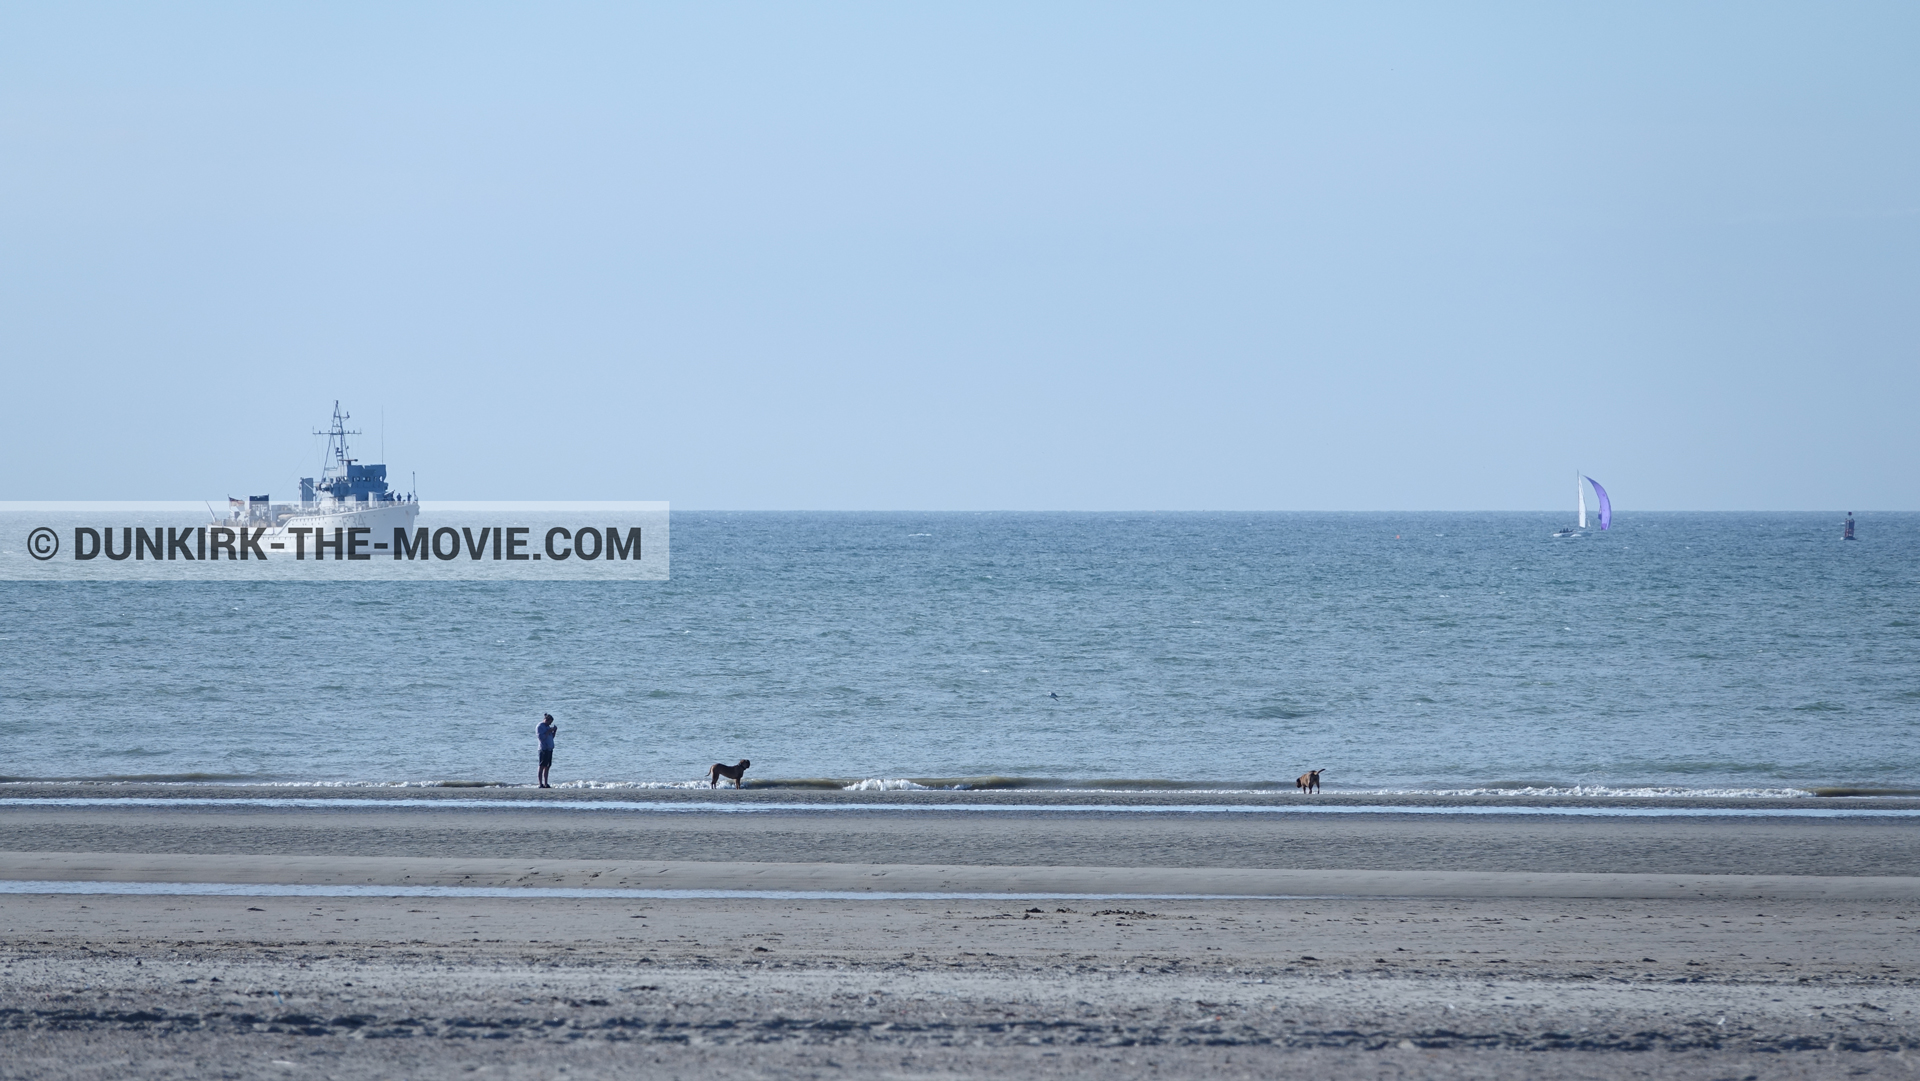 Photo avec ciel bleu, F34 - Hr.Ms. Sittard, mer calme, plage,  des dessous du Film Dunkerque de Nolan